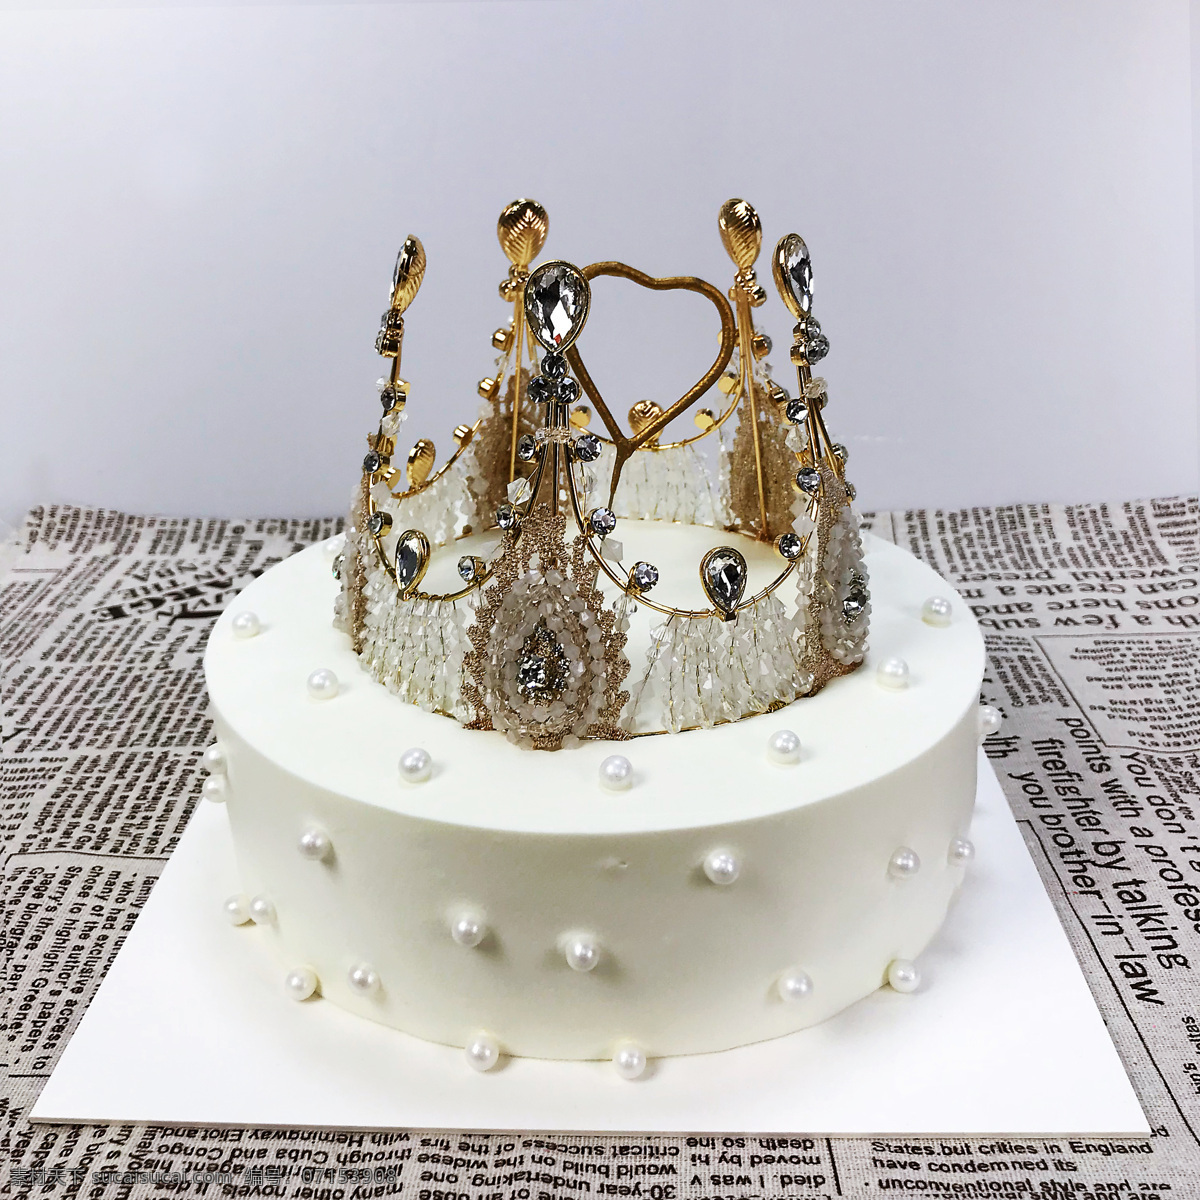 皇冠 蛋糕 生日蛋糕 烘焙 女王 公主 食物摄影 餐饮美食 西餐美食